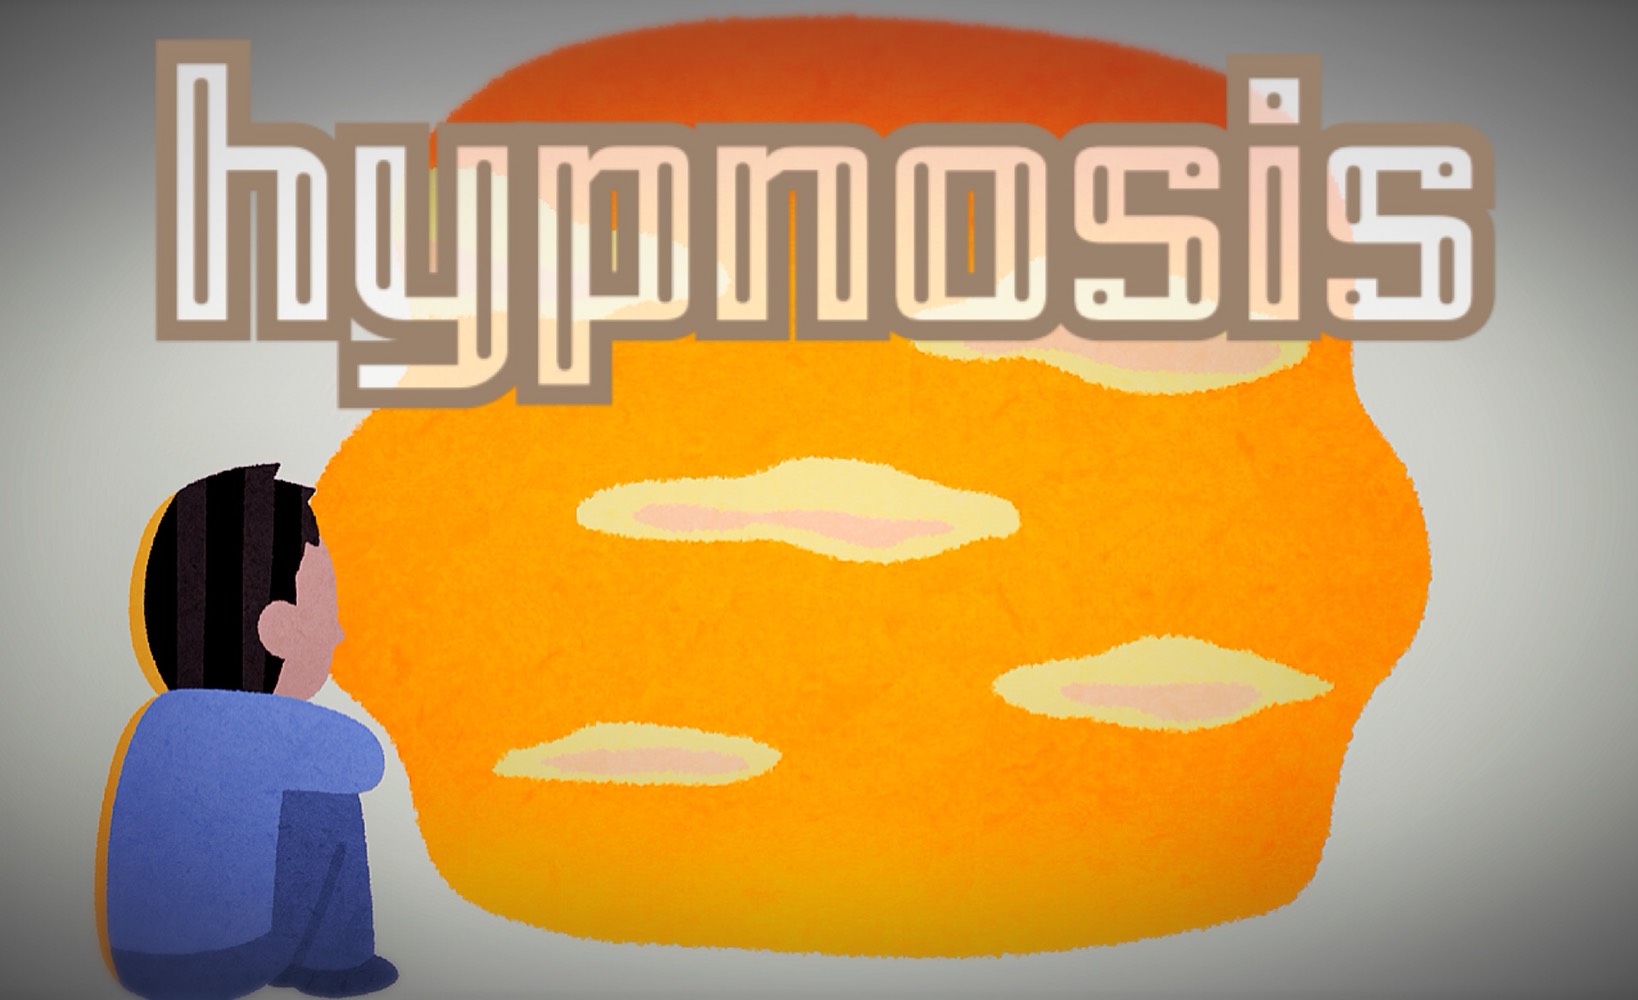 「hypnosis」のイメージ